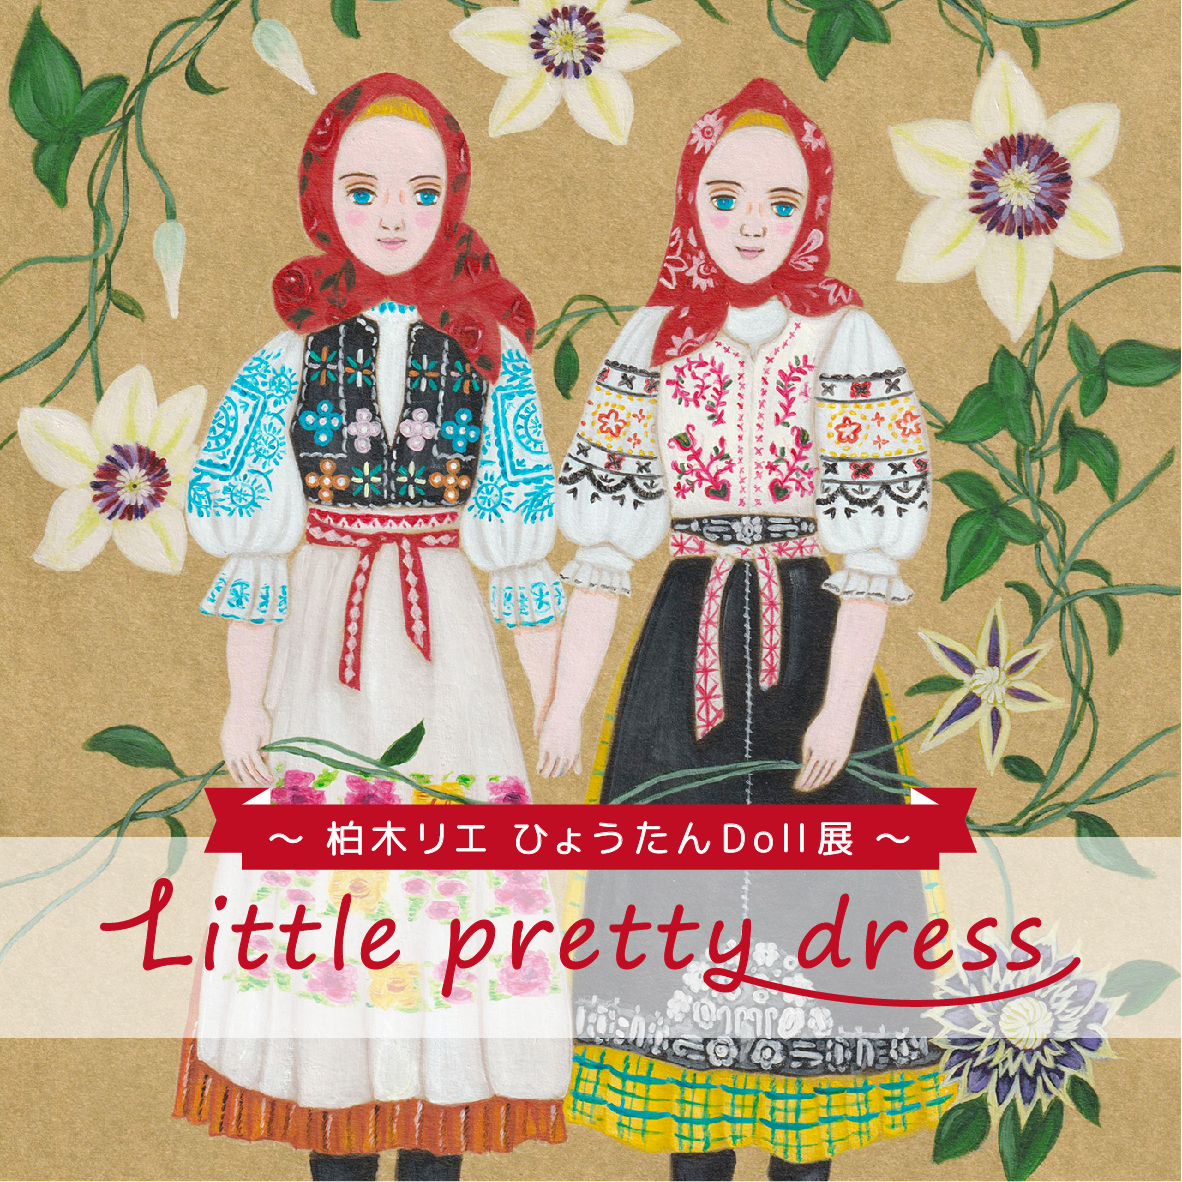 【期間限定】「Little pretty dress」【終了しました】